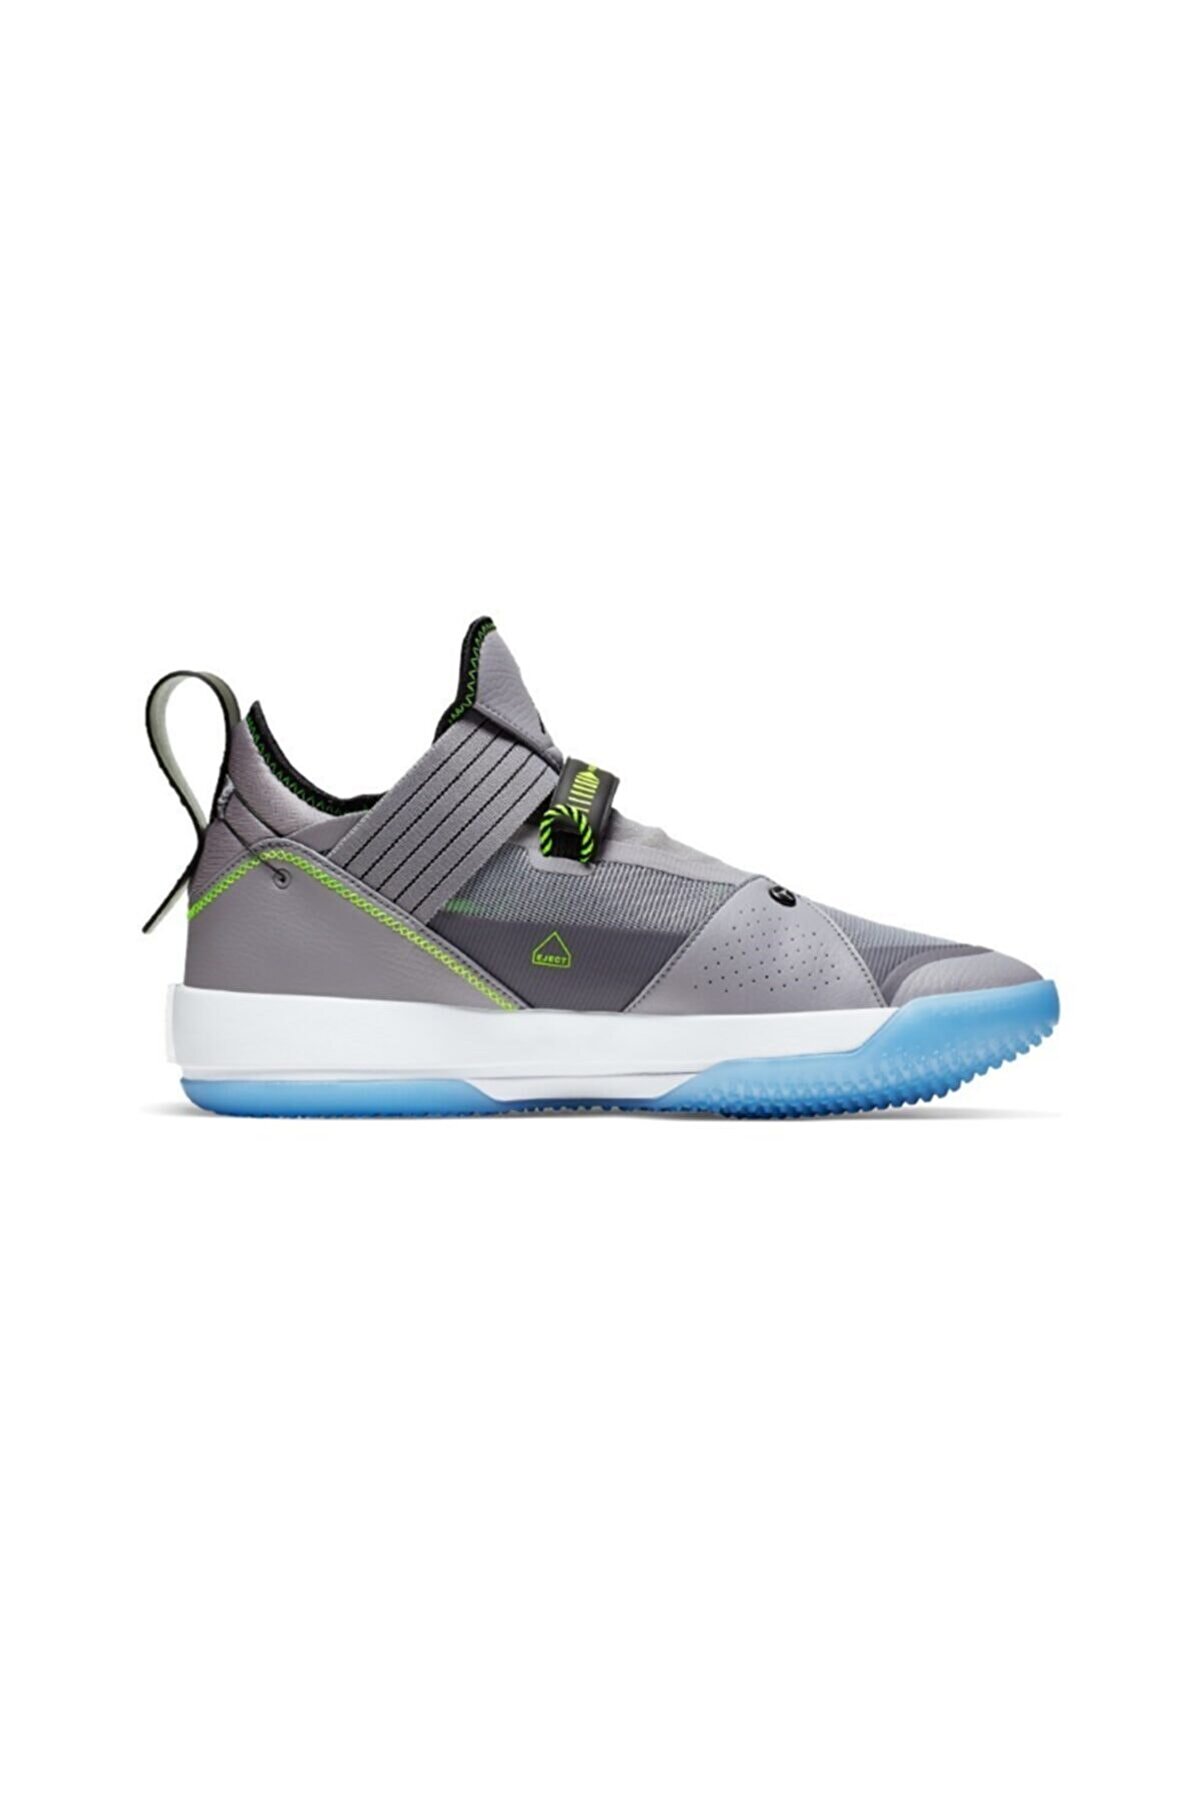 Nike Air Jordan 33 Se Cement Grey Erkek Ayakkabısı Cd9560 007